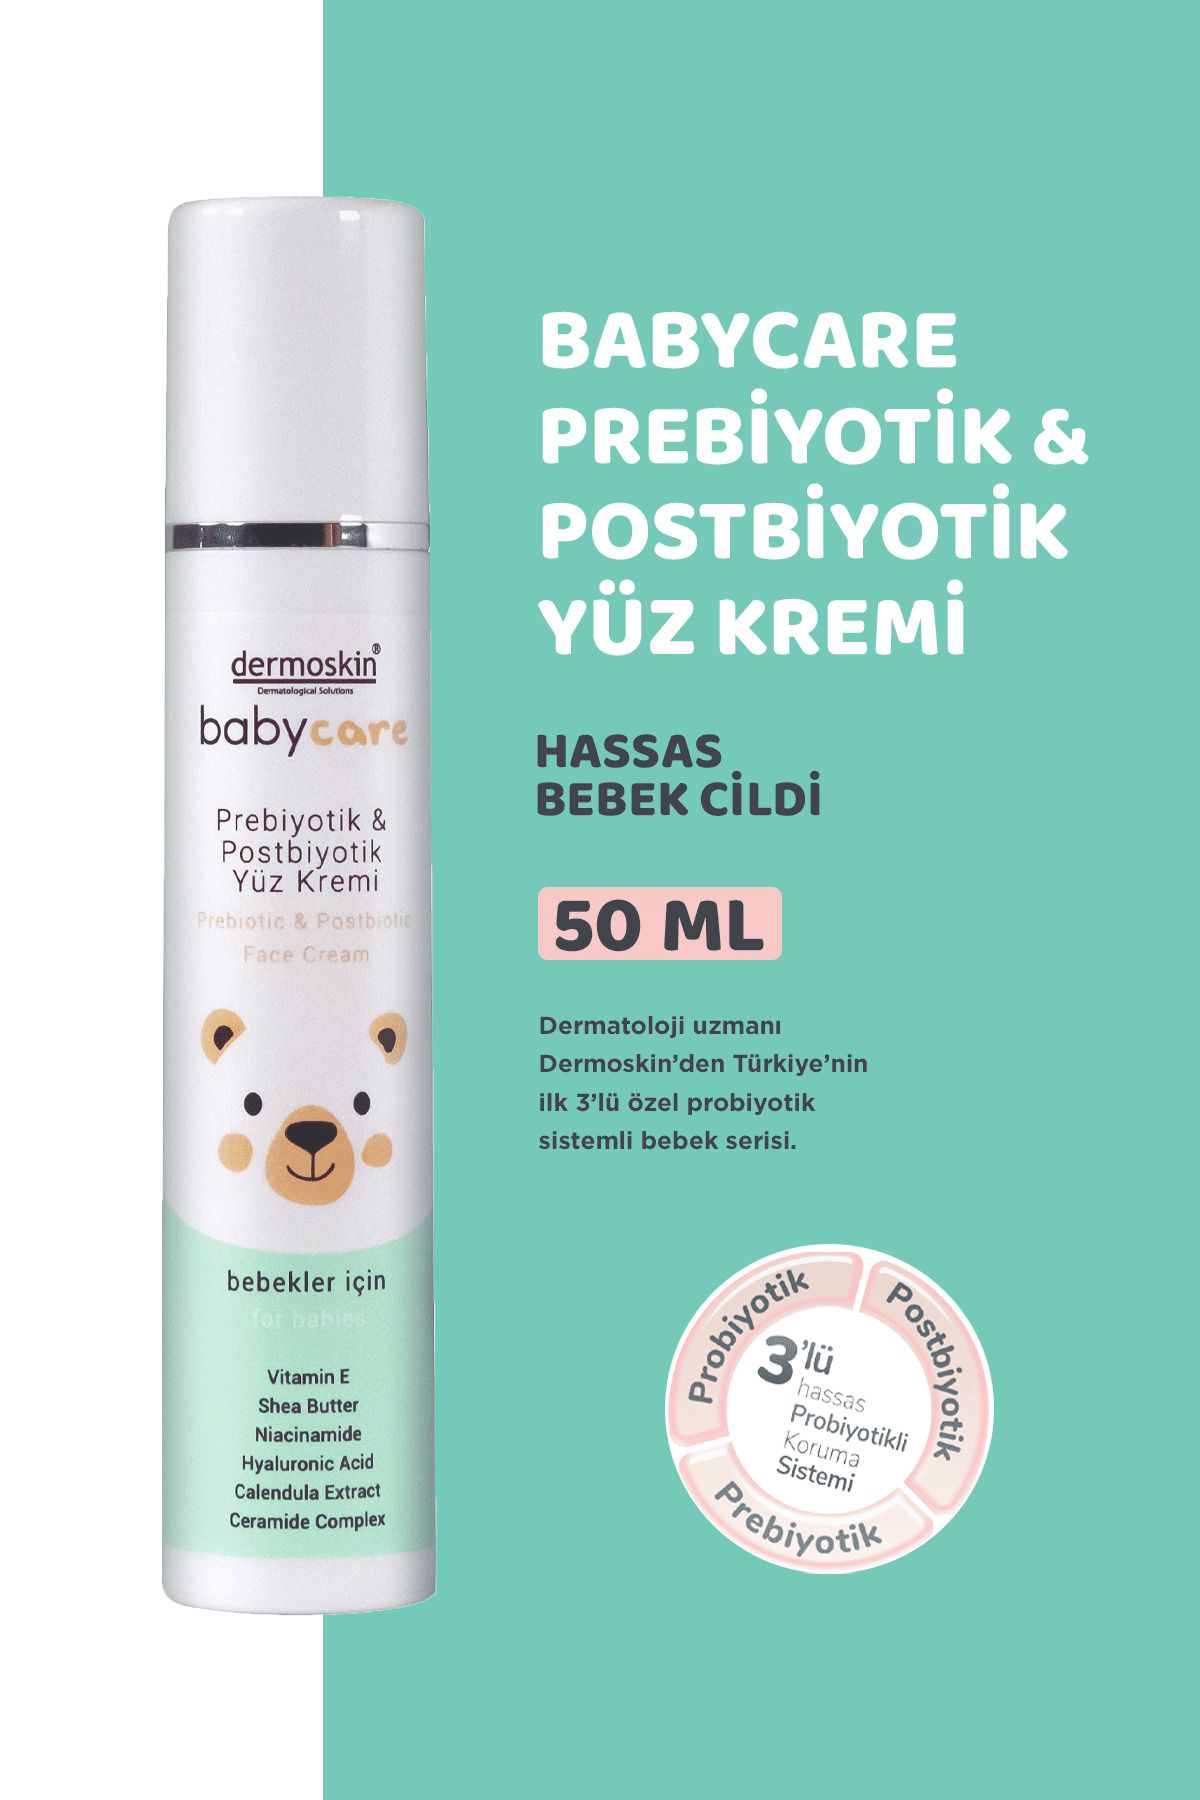 Dermoskin Babycare Bebeklere Özel  Bakım Yüz Kremi 50 ml